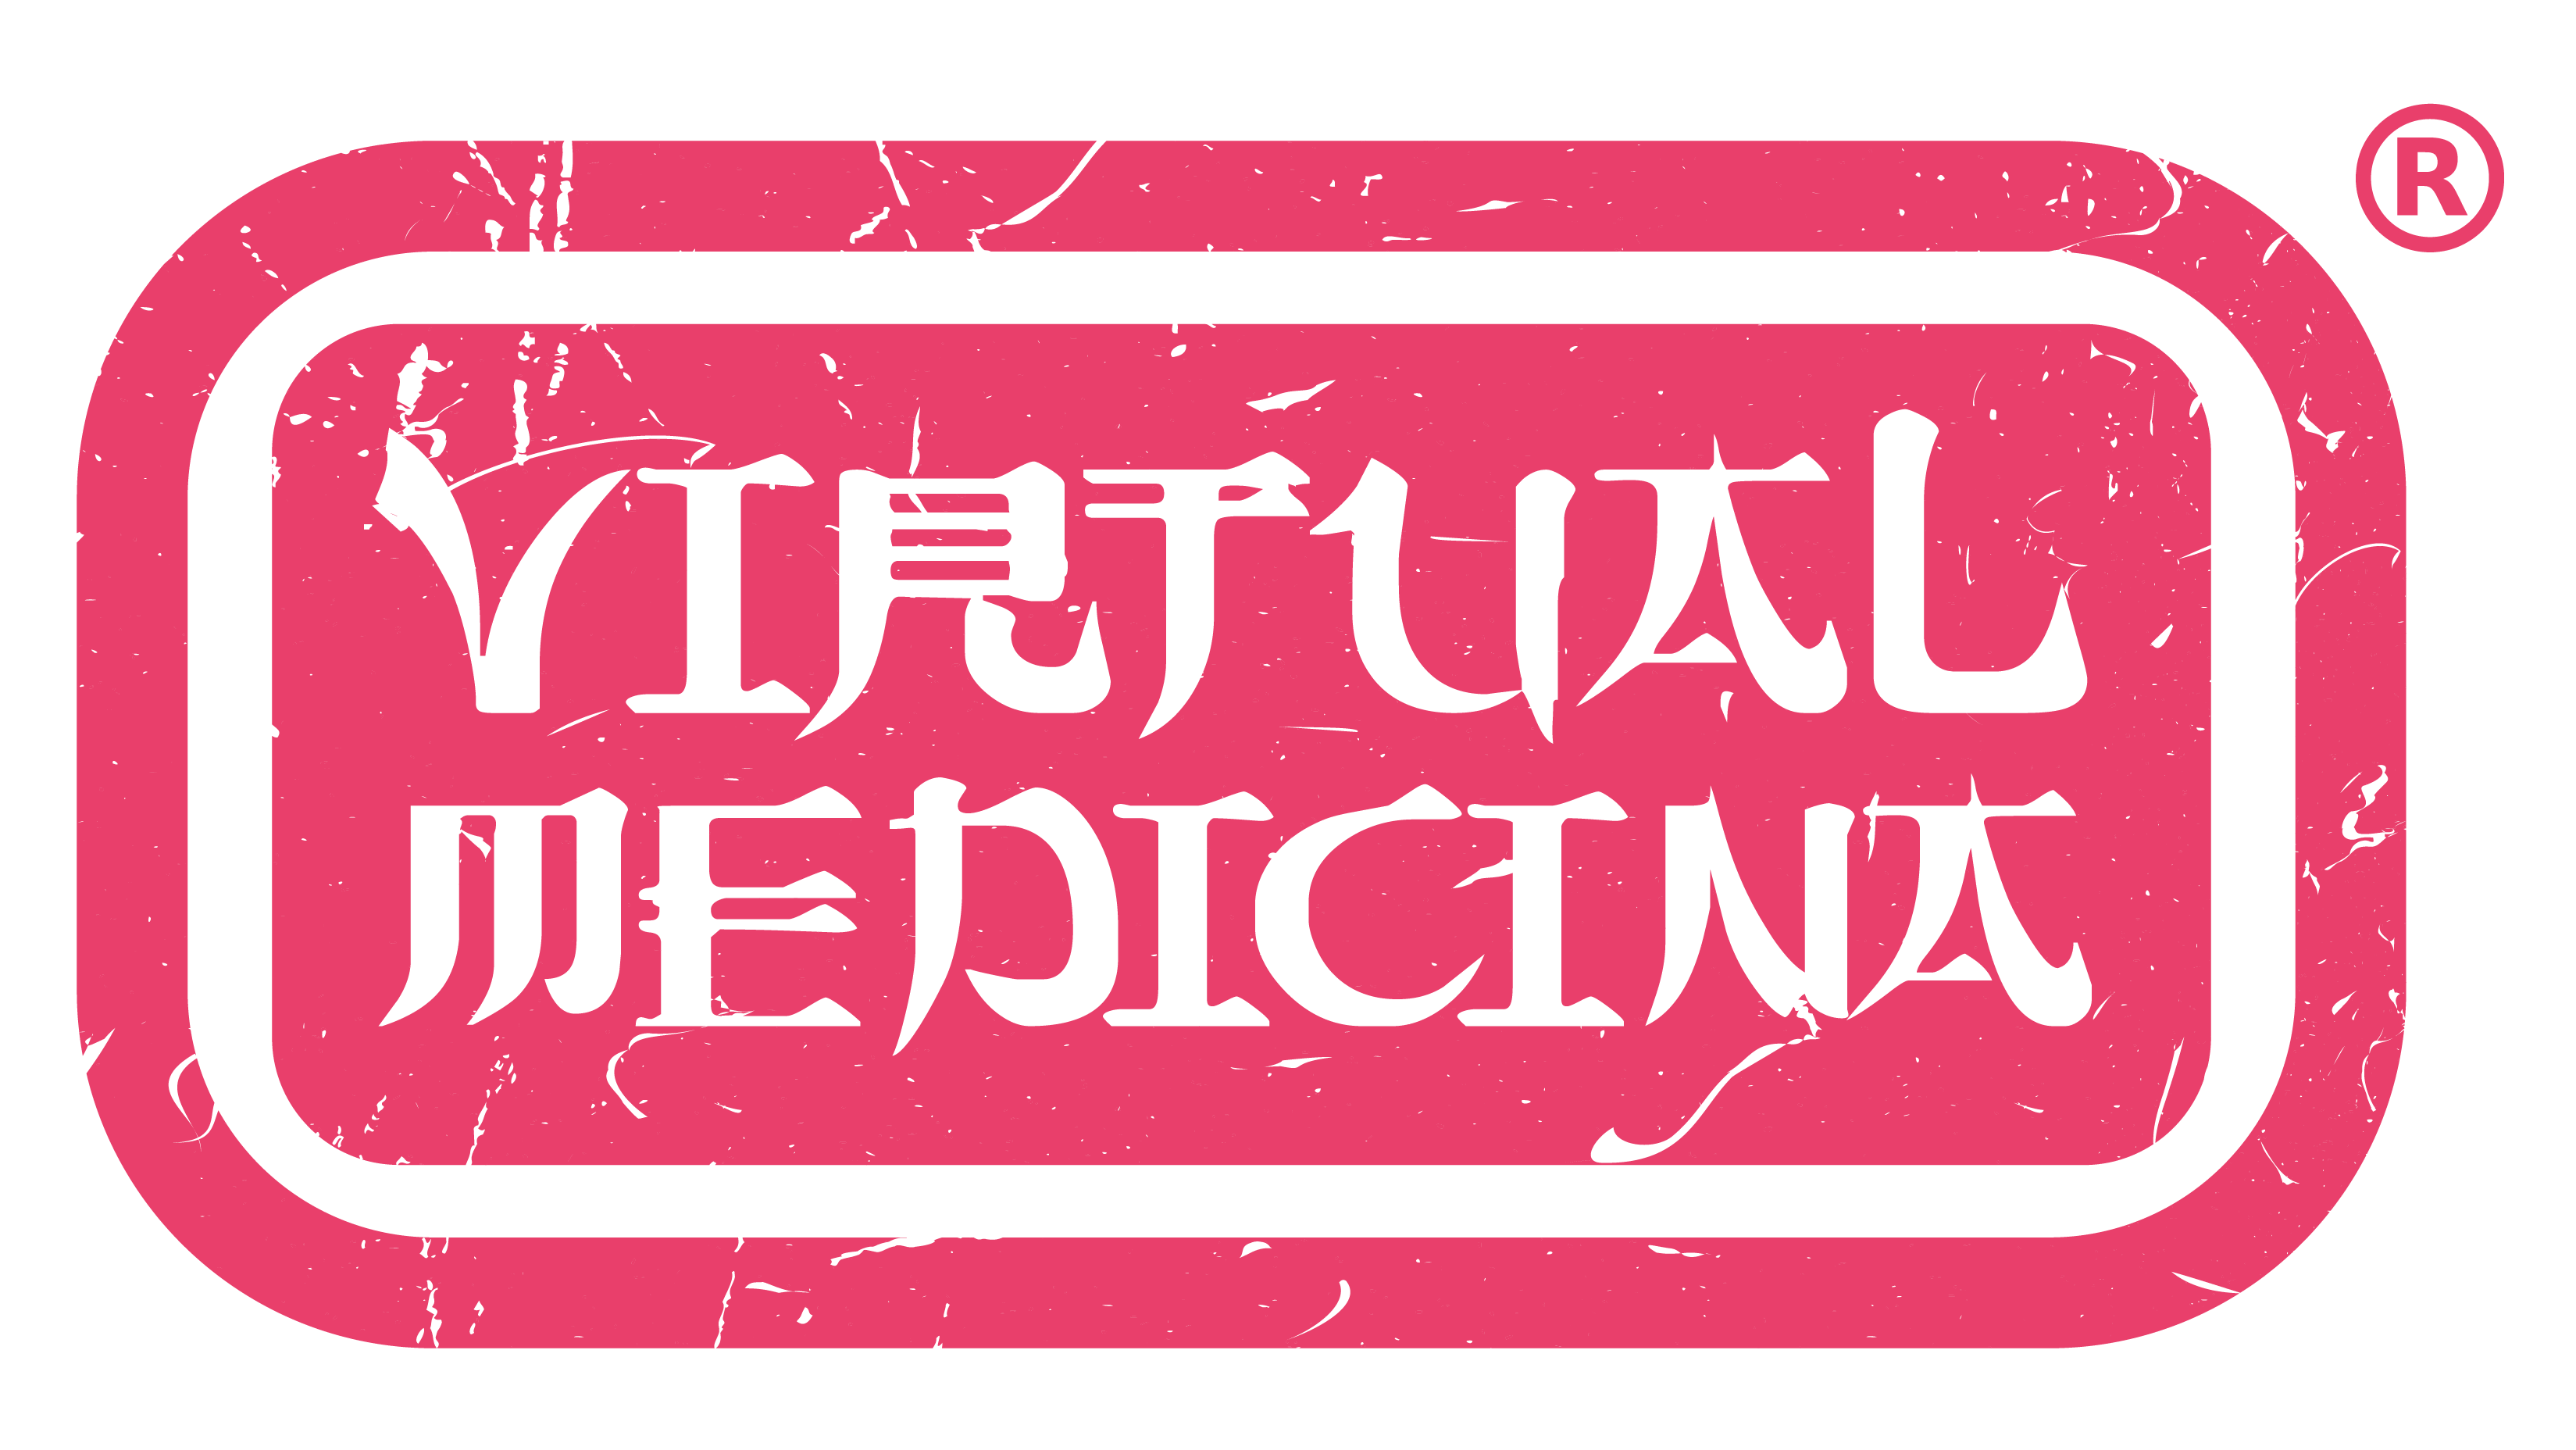 Logo of Virtual Medicina